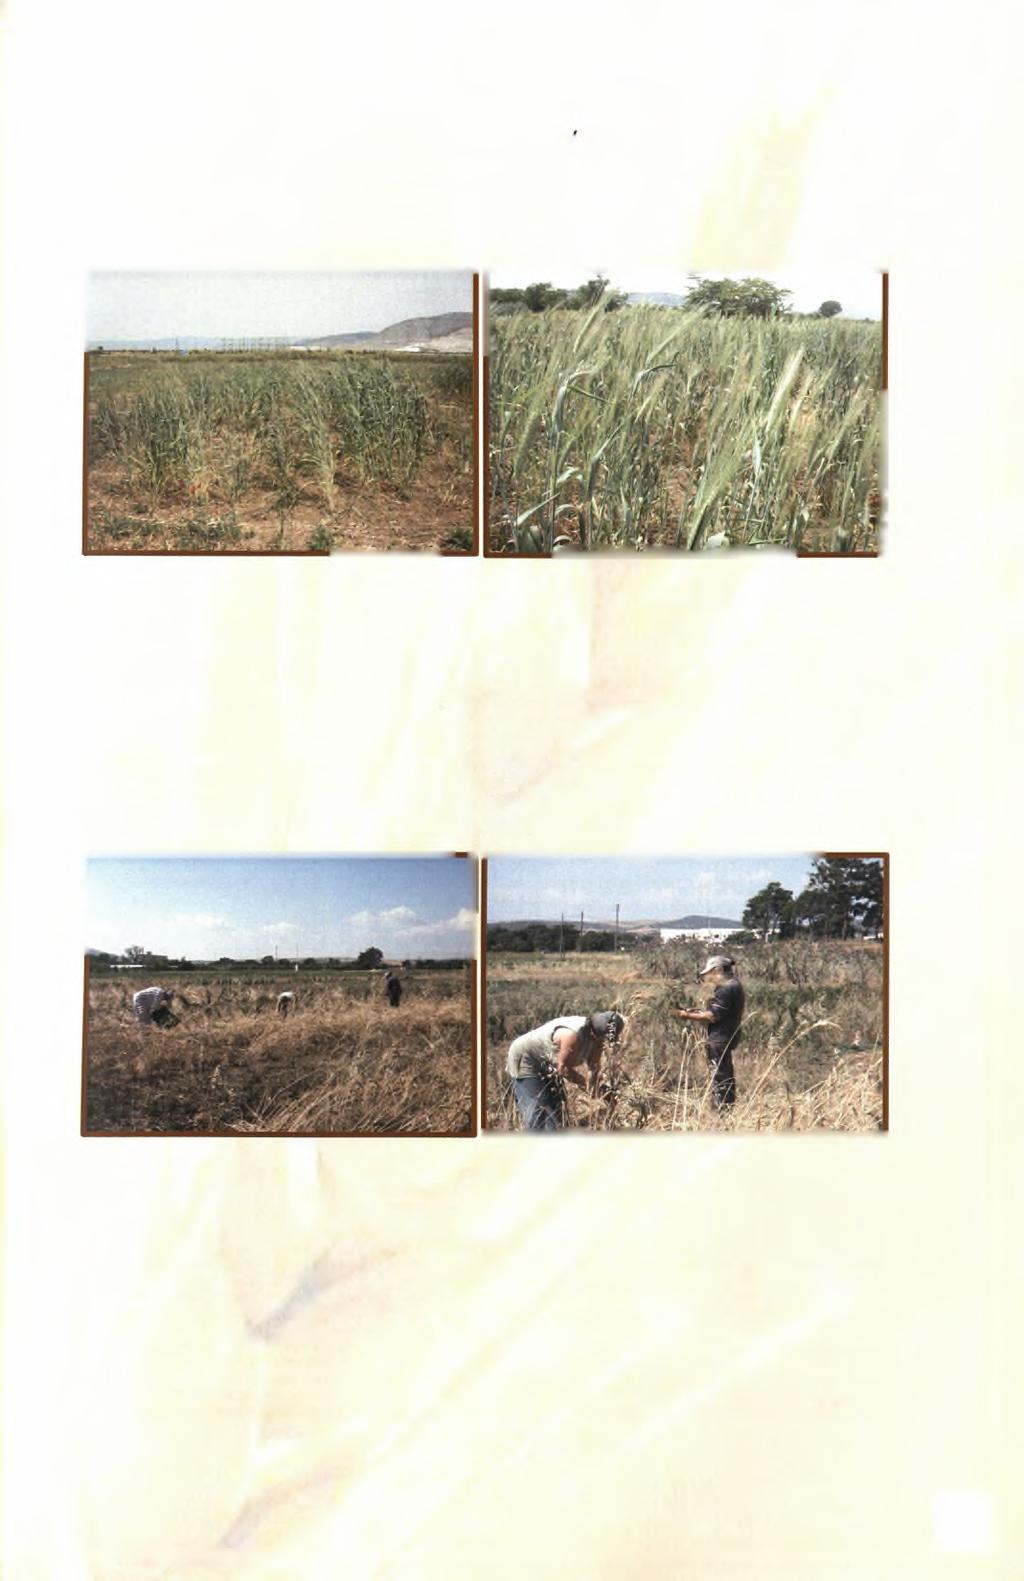 Τον Μάιο του 2010 (05-05-2010) πραγματοποιήθηκαν οι μετρήσεις οι οποίες αφορούσαν το ύψος των φυτών με τη χρήση μετροταινίας και το αδέλφωμα, καθώς και τη